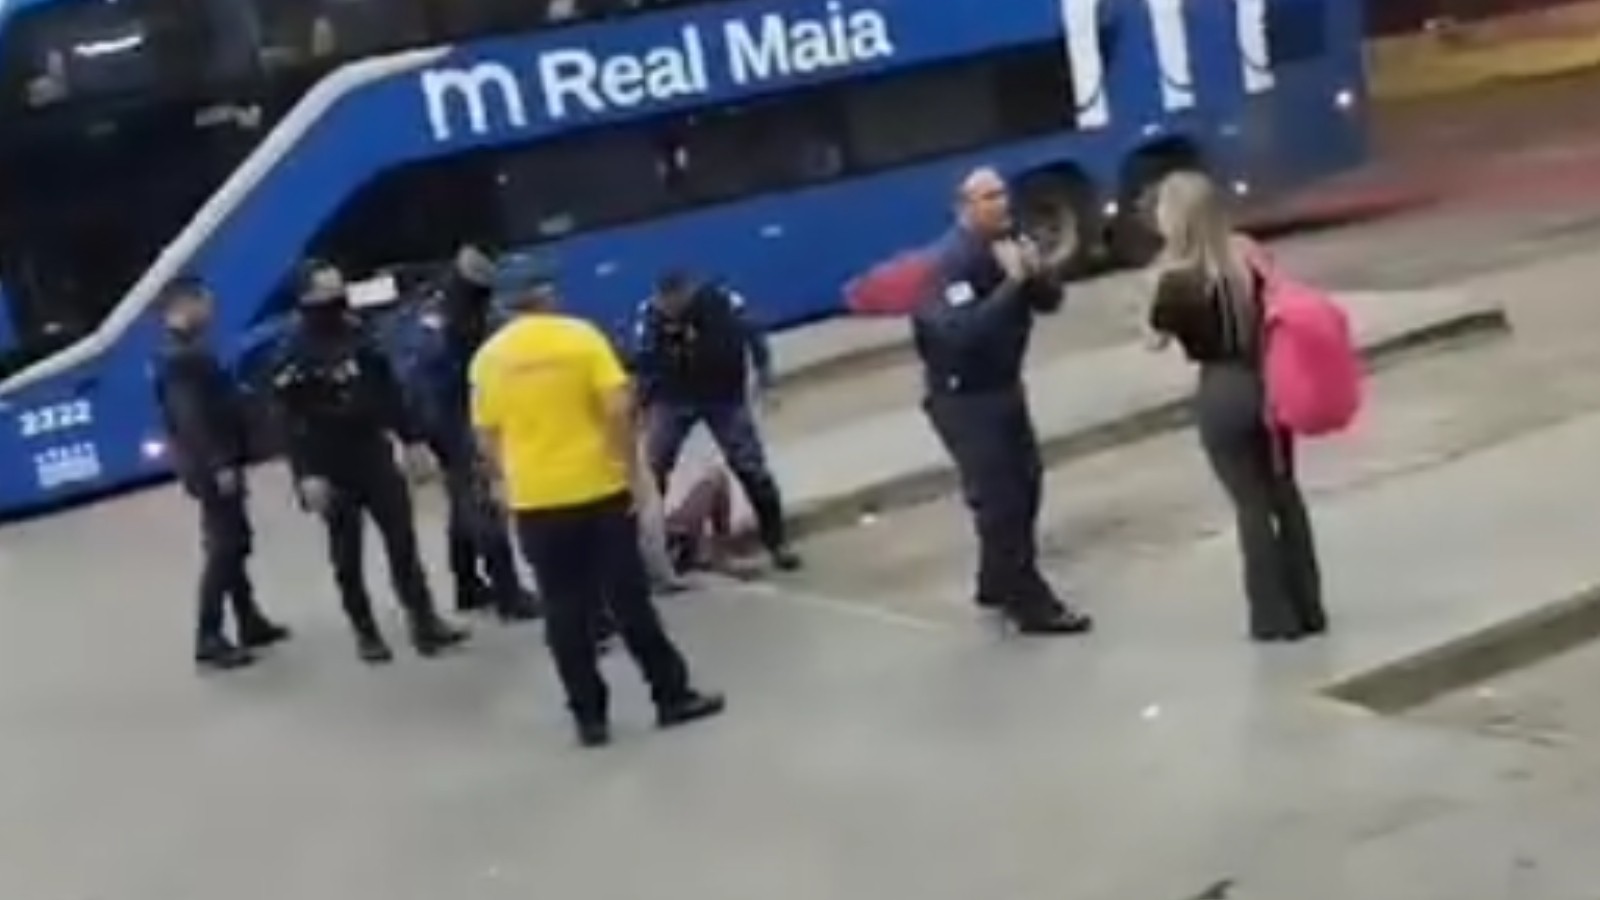 VÍDEO: Guardas dão tapa na cara, chutam e pisam homem em rodoviária no Ceará